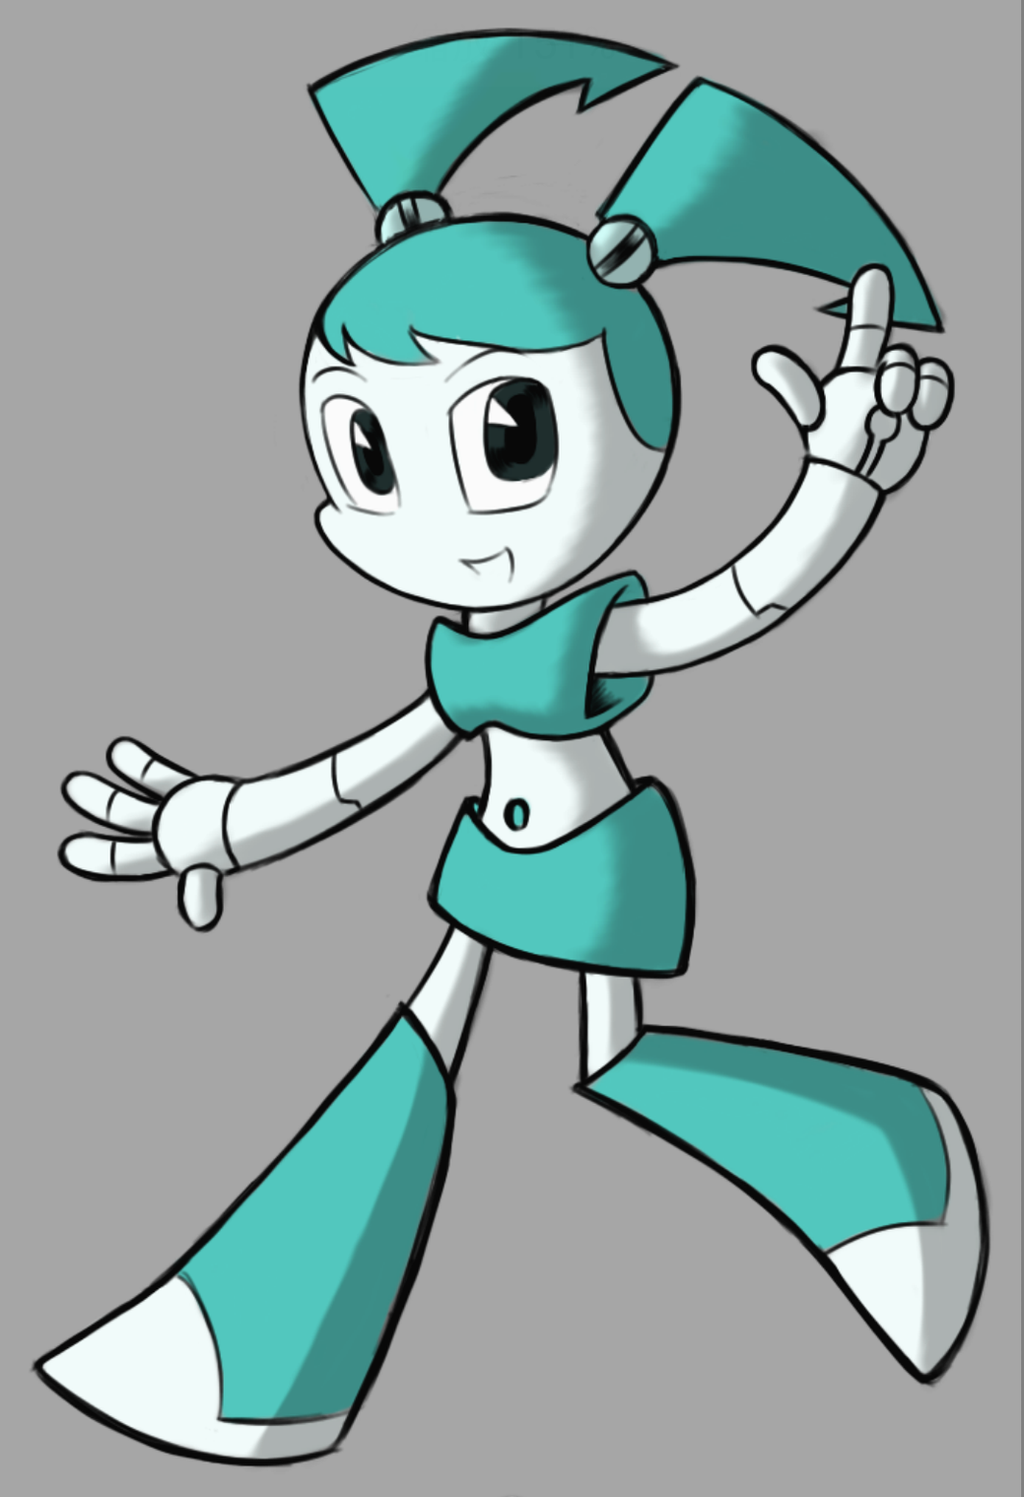 Jenny Wakeman (a.k.a. XJ9 the robot girl) by Zack113 on DeviantArt